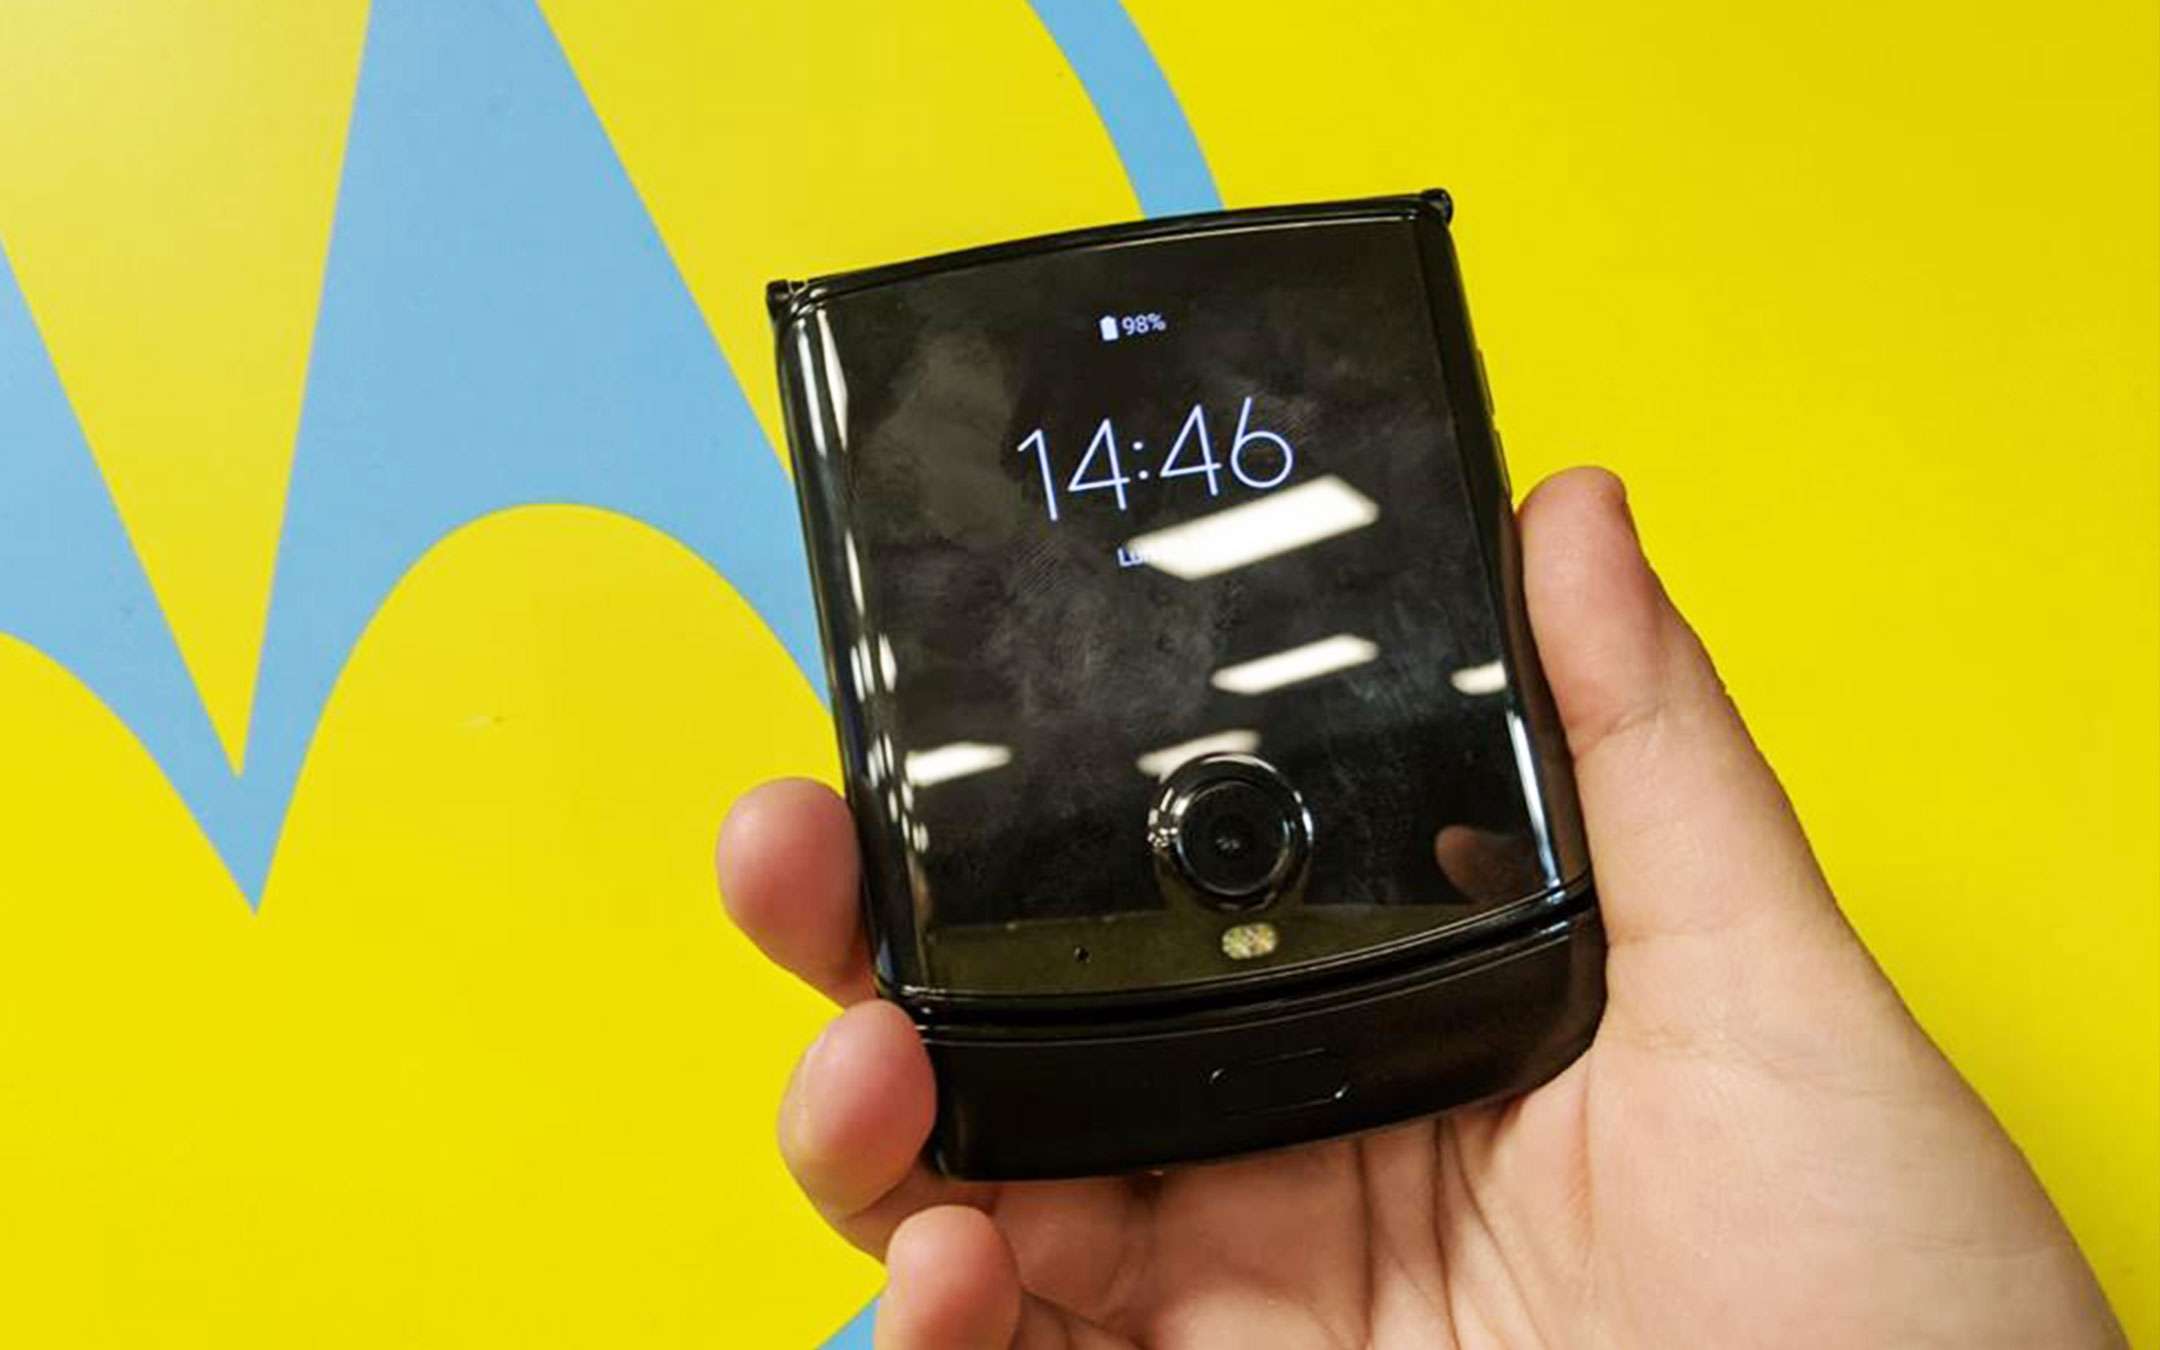 razr, Motorola ha preso la piega giusta: hands-on